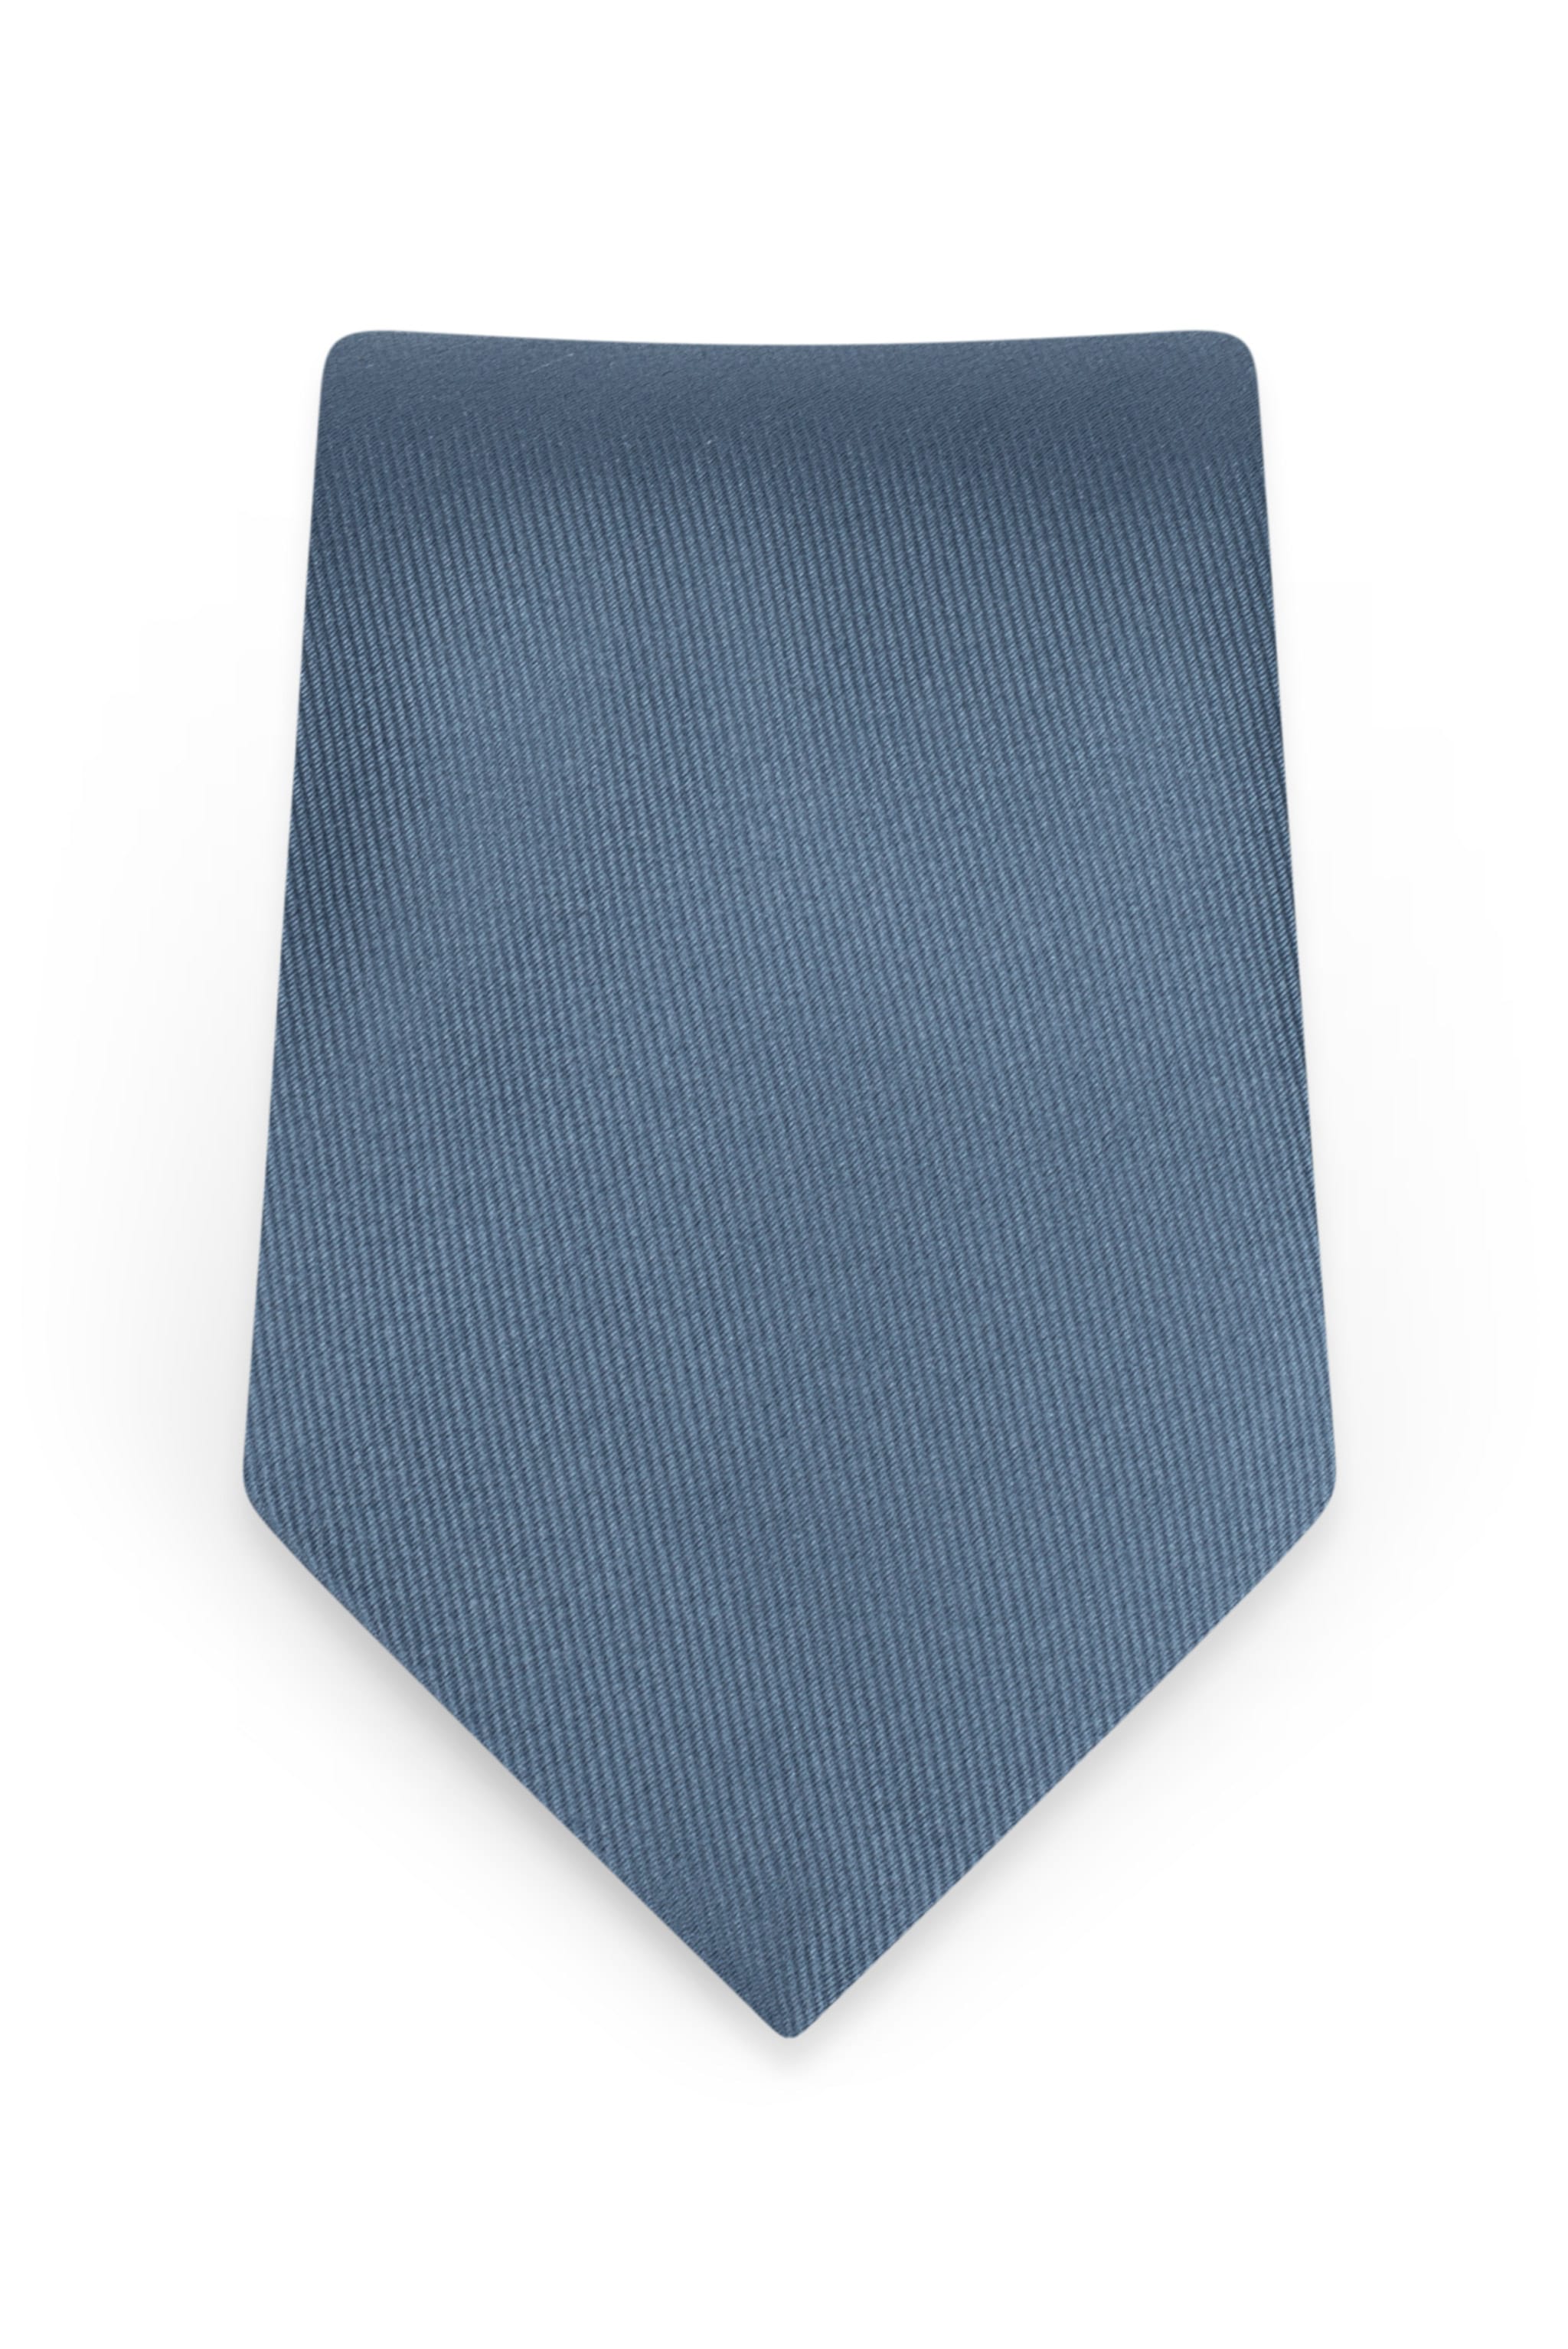 Solid Slate Blue Self-Tie Windsor Tie